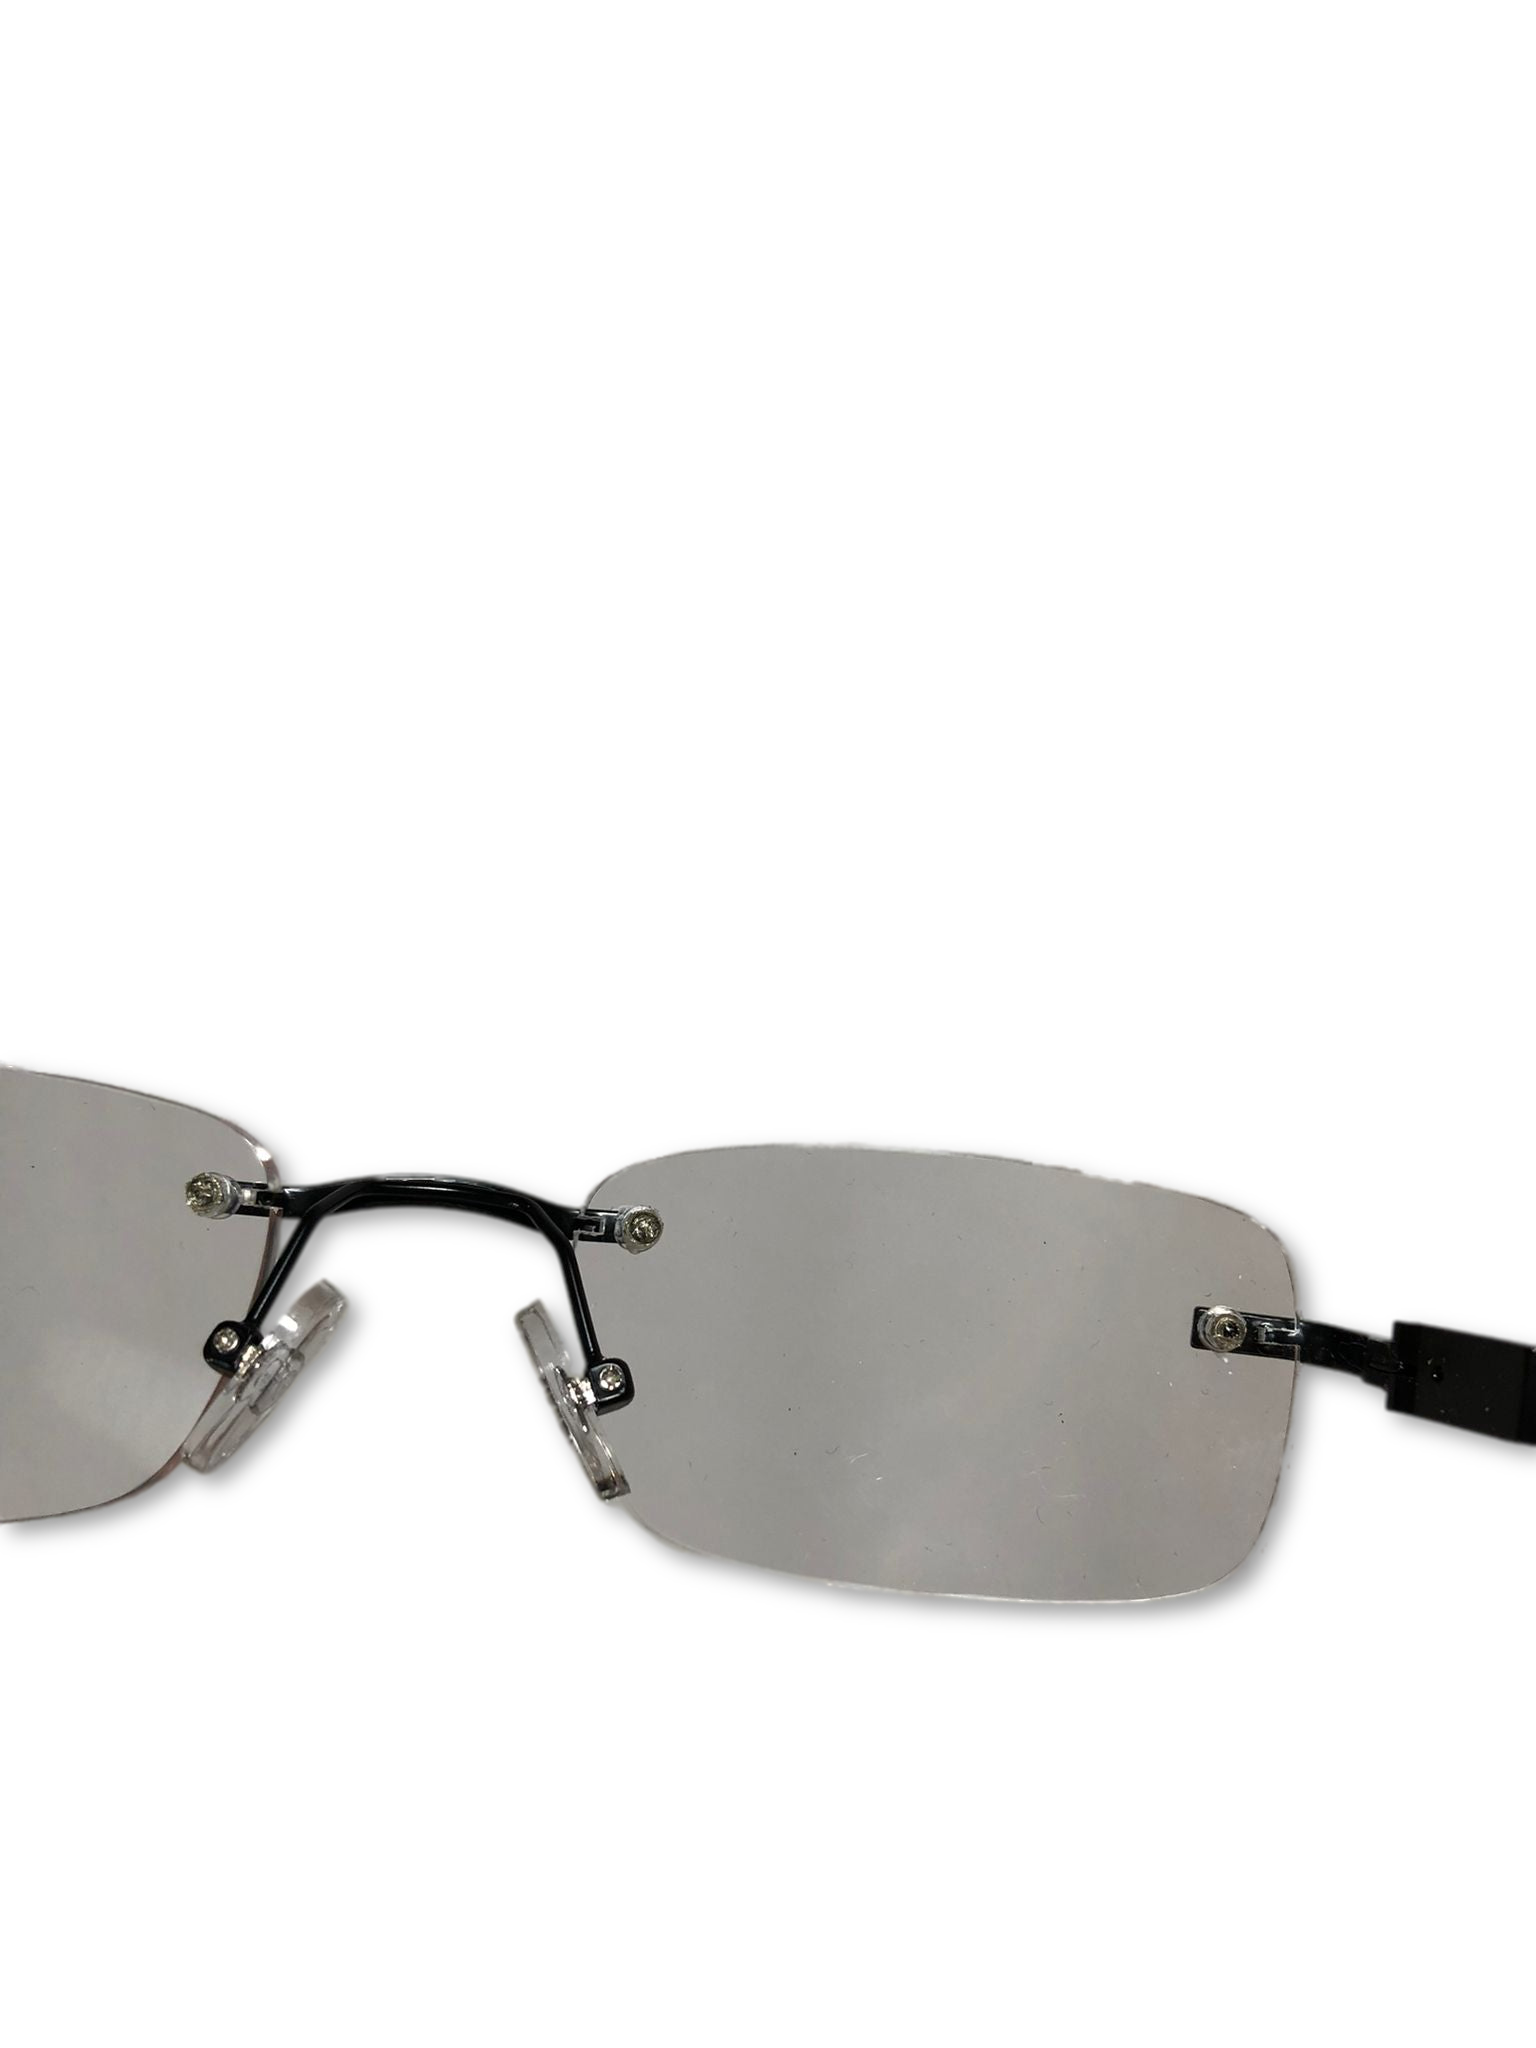 Set of 2 DesignOptics Frameless Reading Glasses +1.25